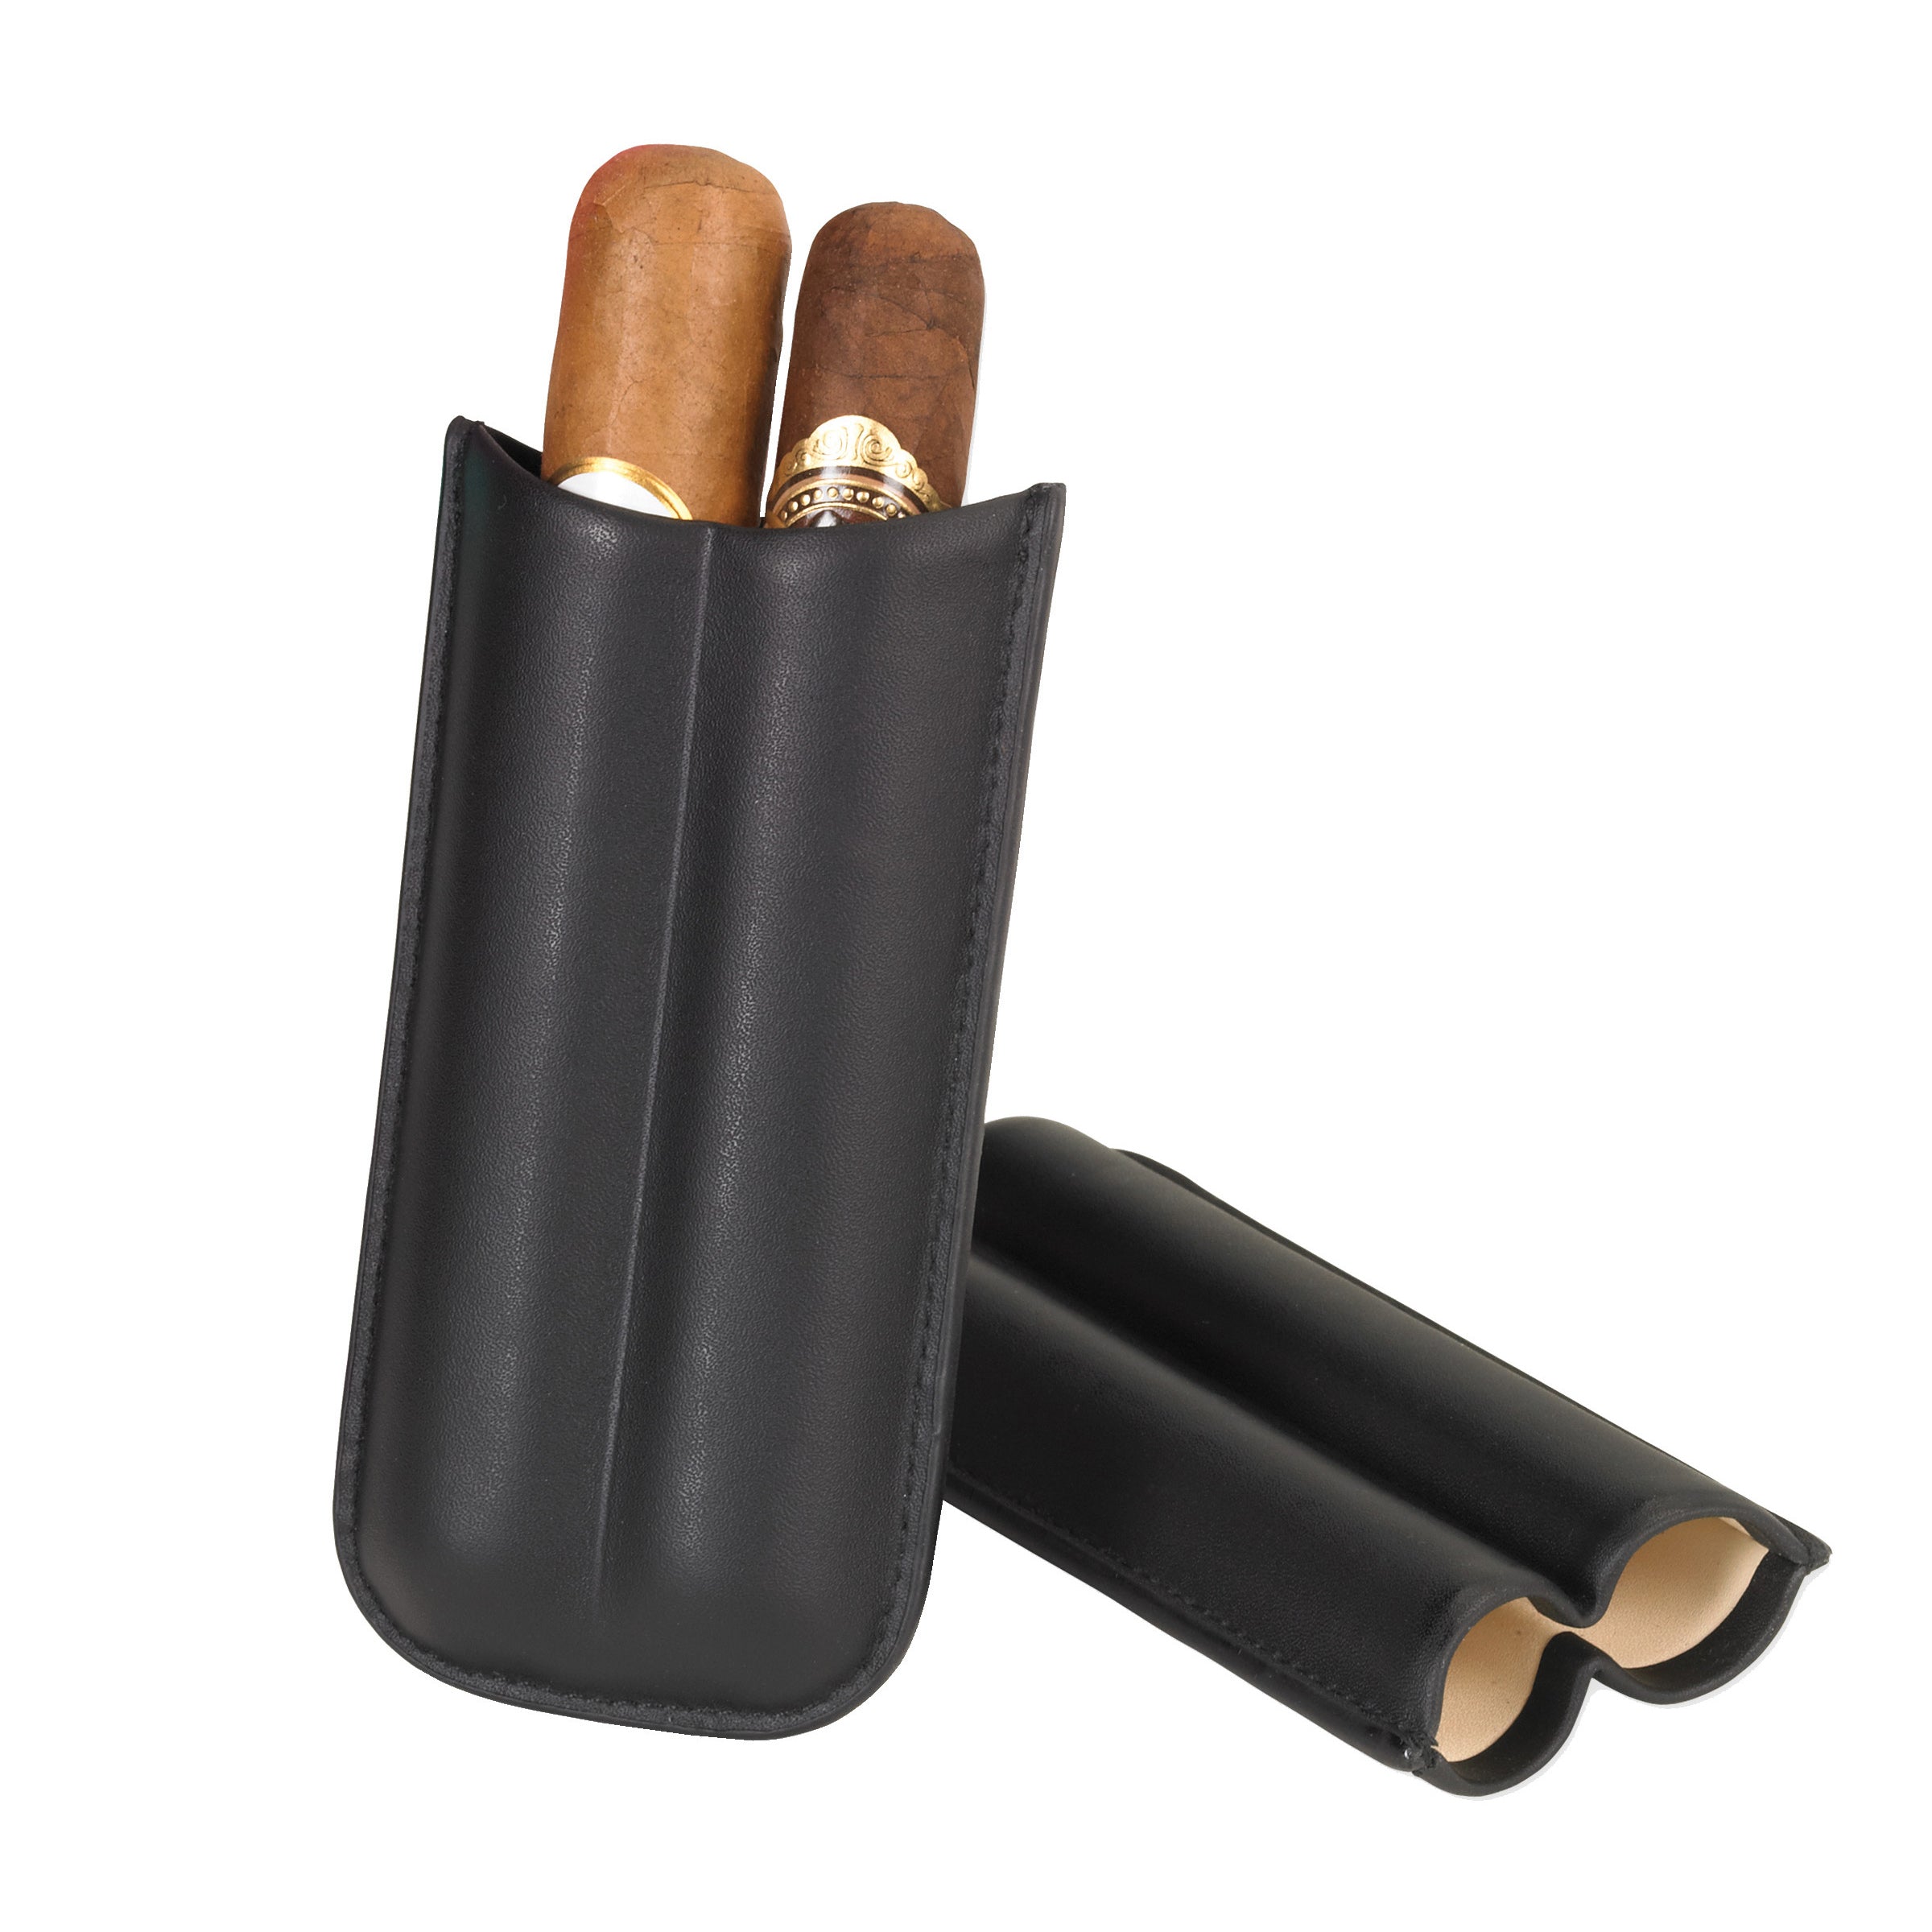 Black Leather 2 & 3 Finger Cigar Cases